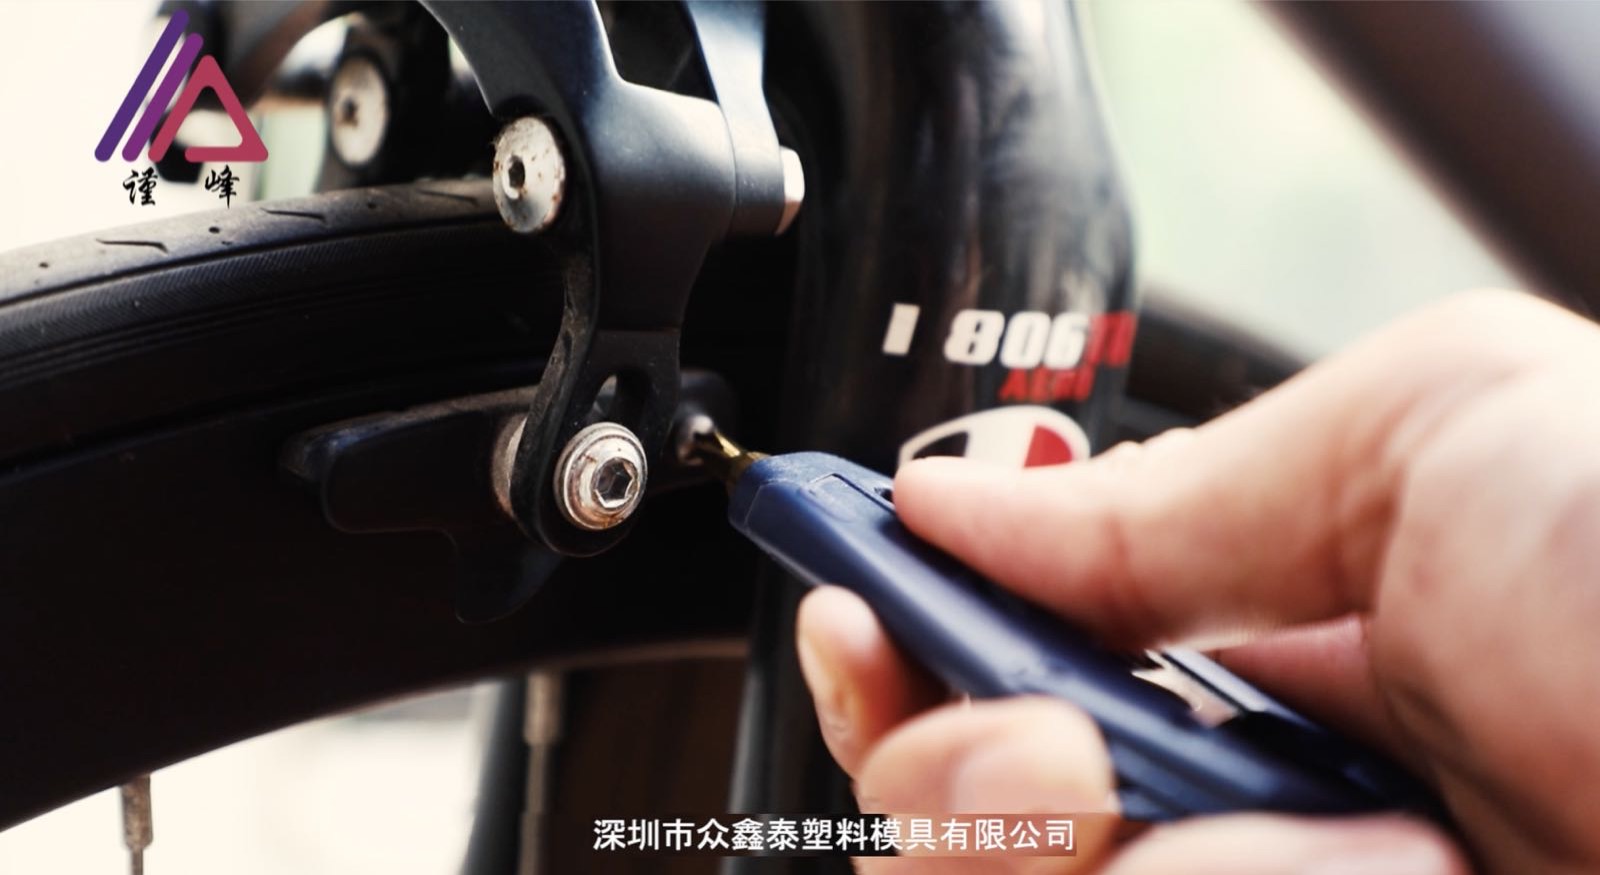 螺丝刀螺丝刀自行车装卸组合工具 内六角螺丝刀 套筒扳手多功能修理工具厂家